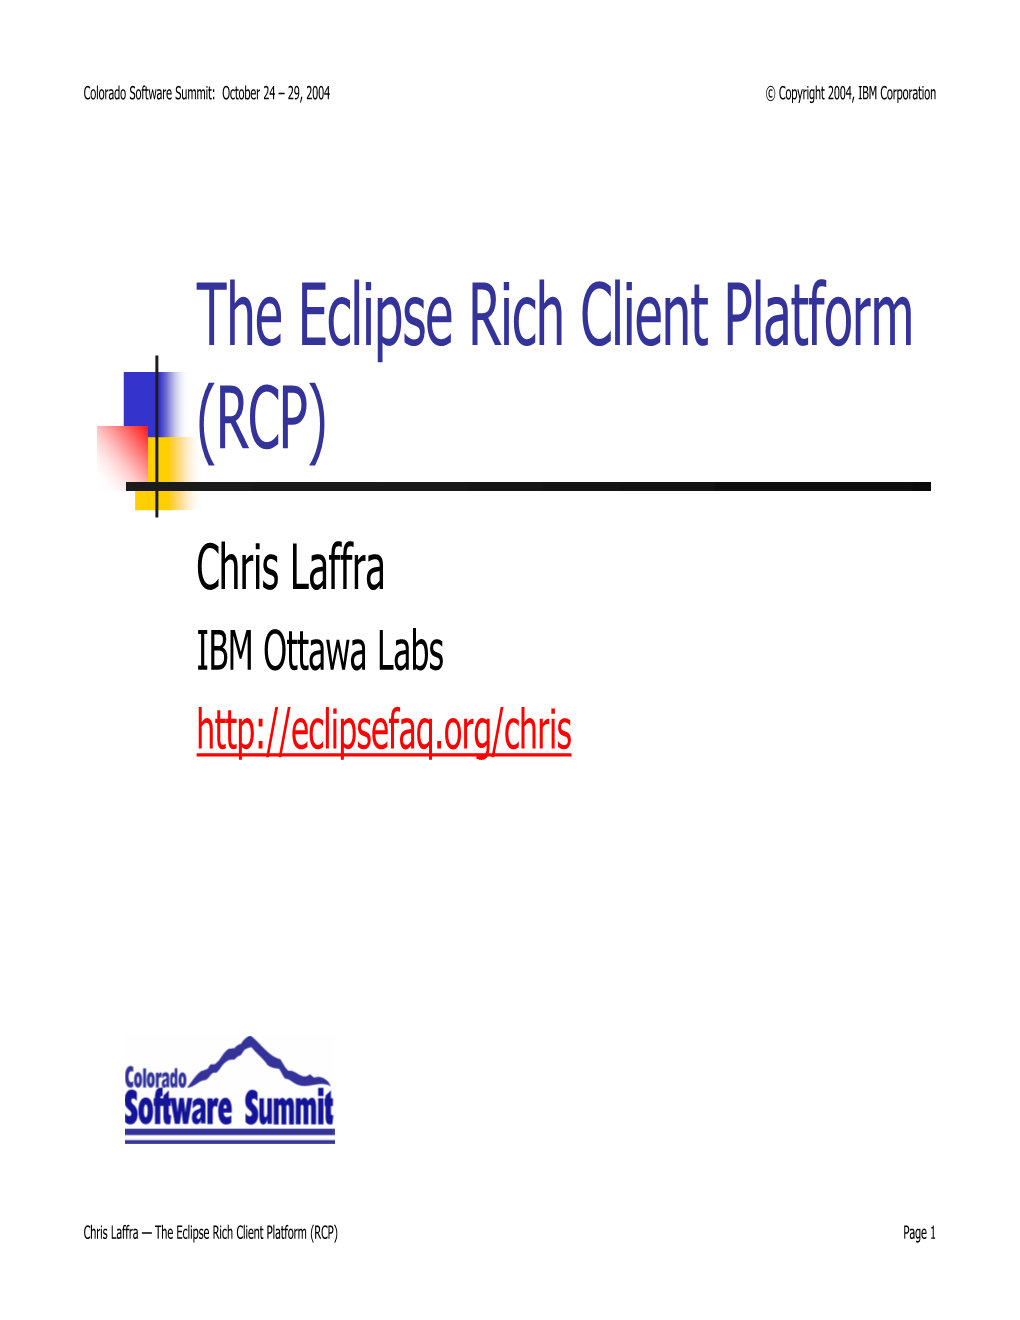 The Eclipse Rich Client Platform (RCP)